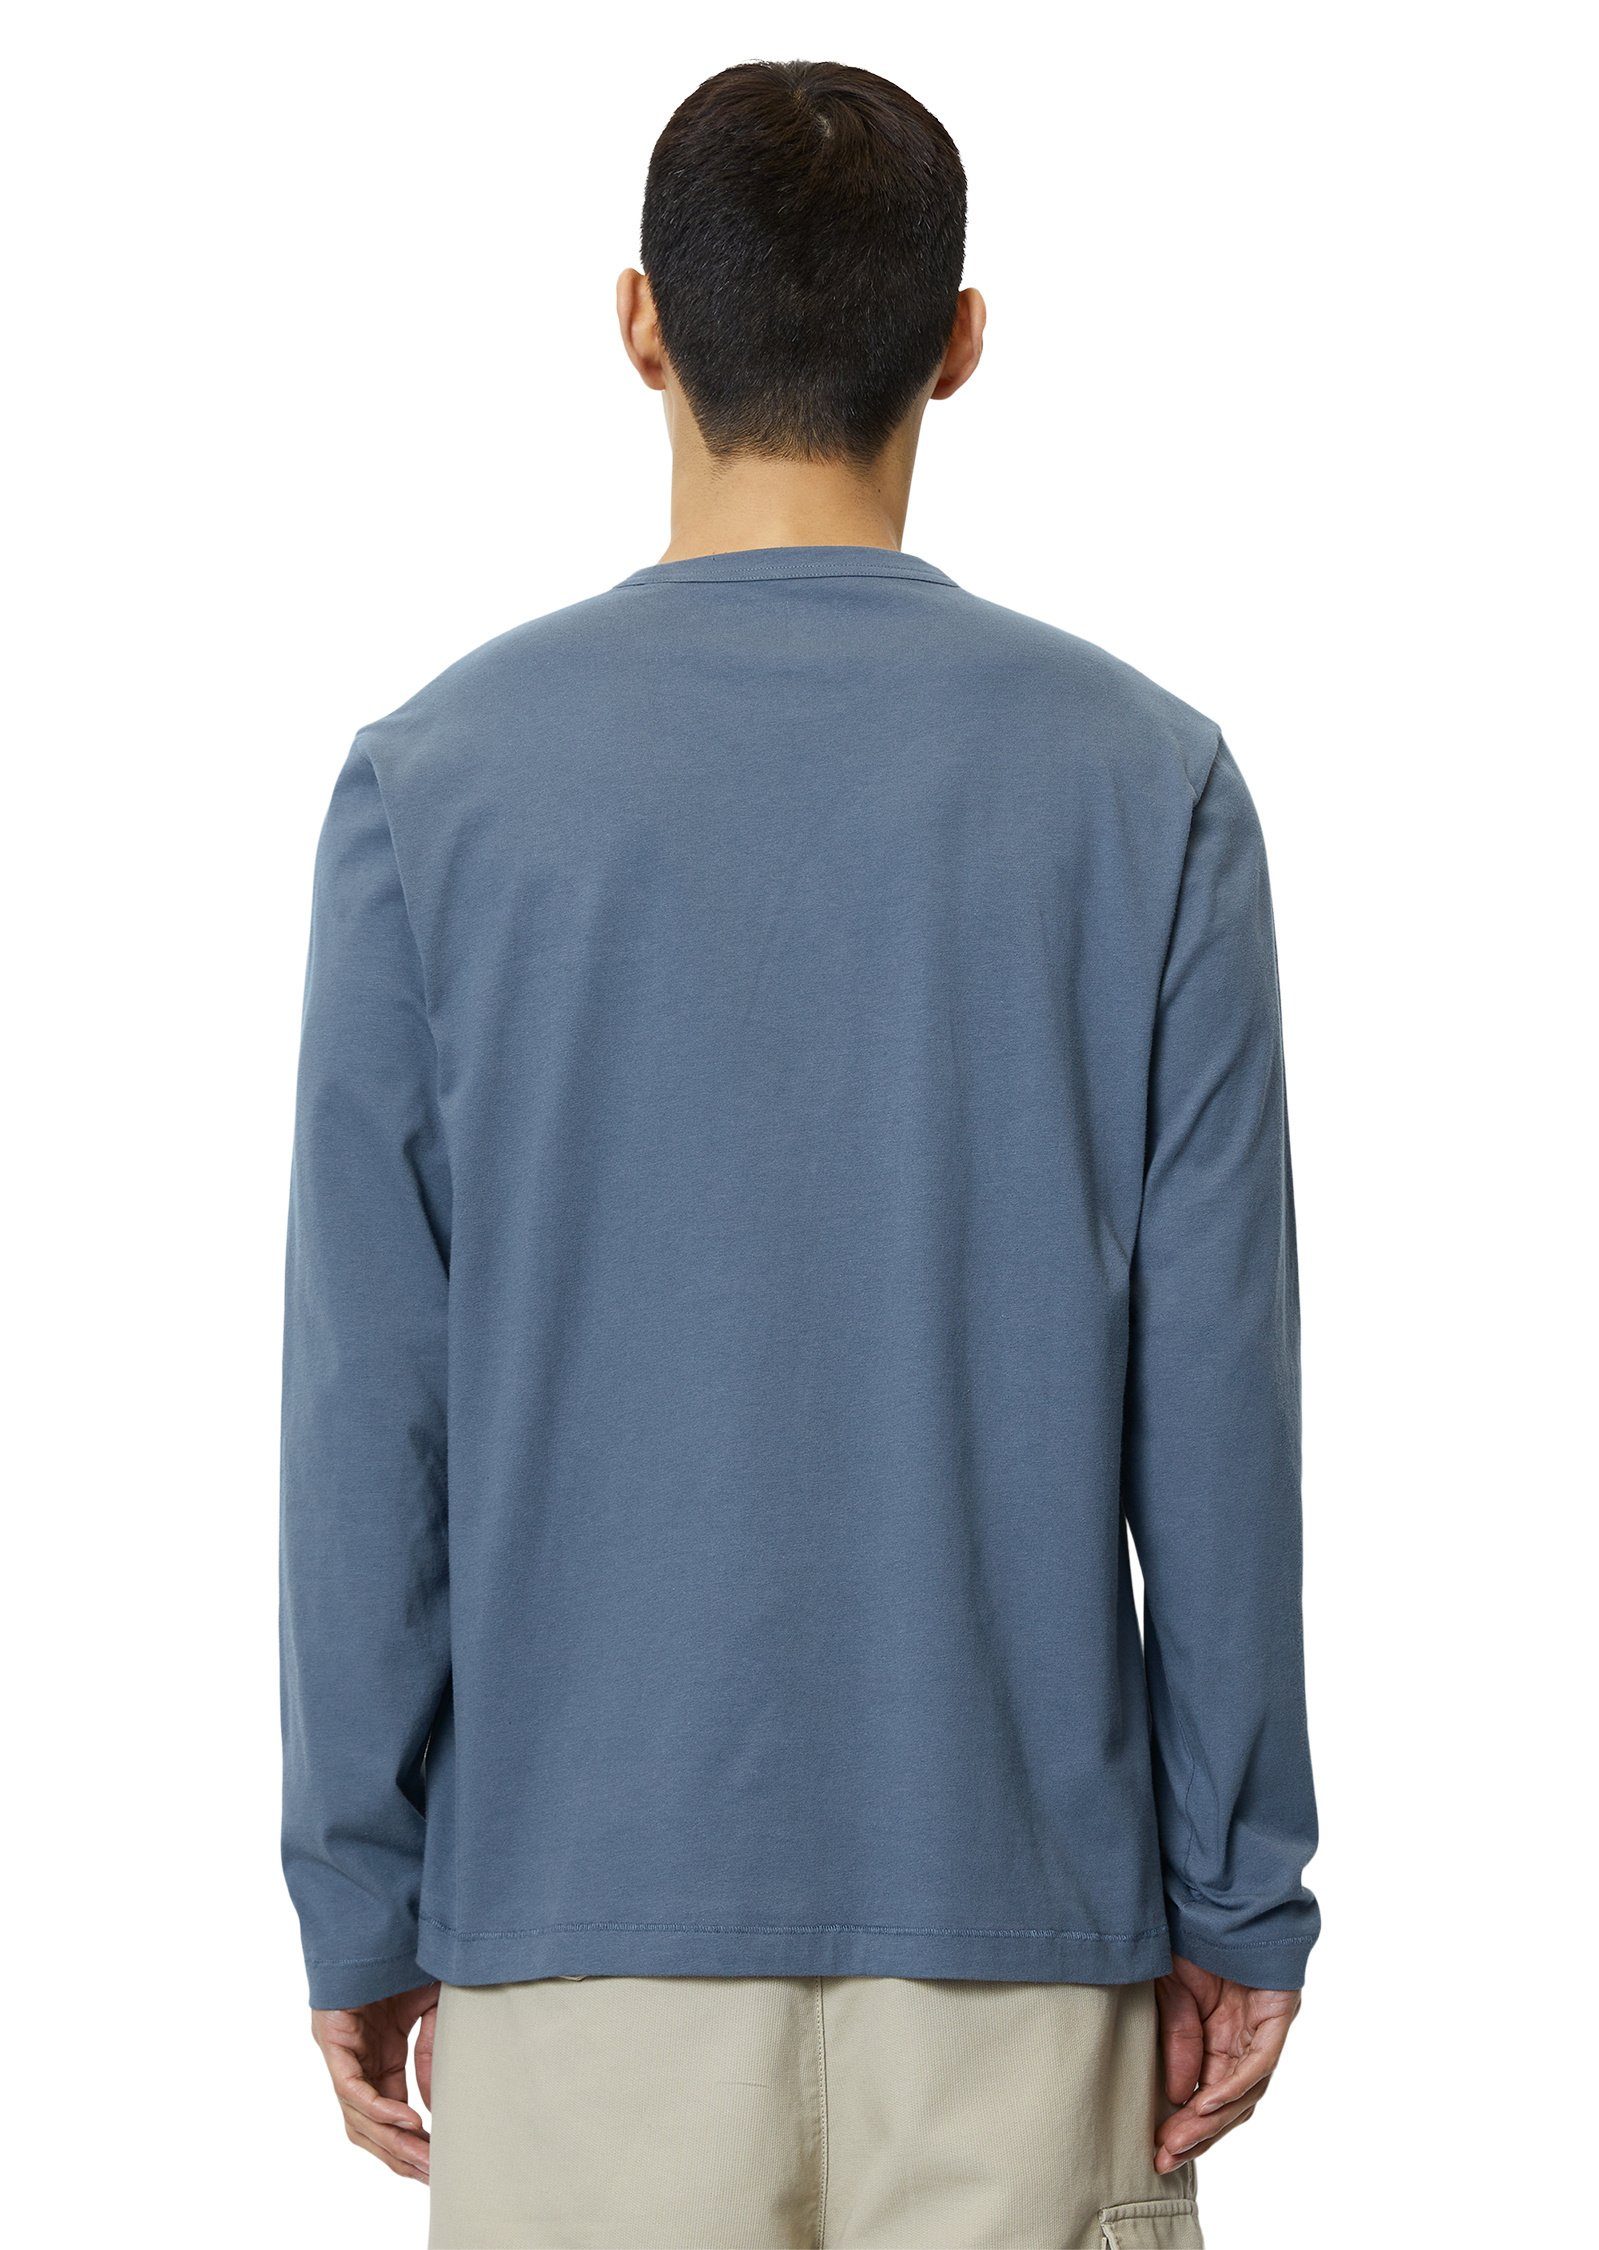 Marc O'Polo Langarmshirt aus Jersey-Qualität blau schwerer